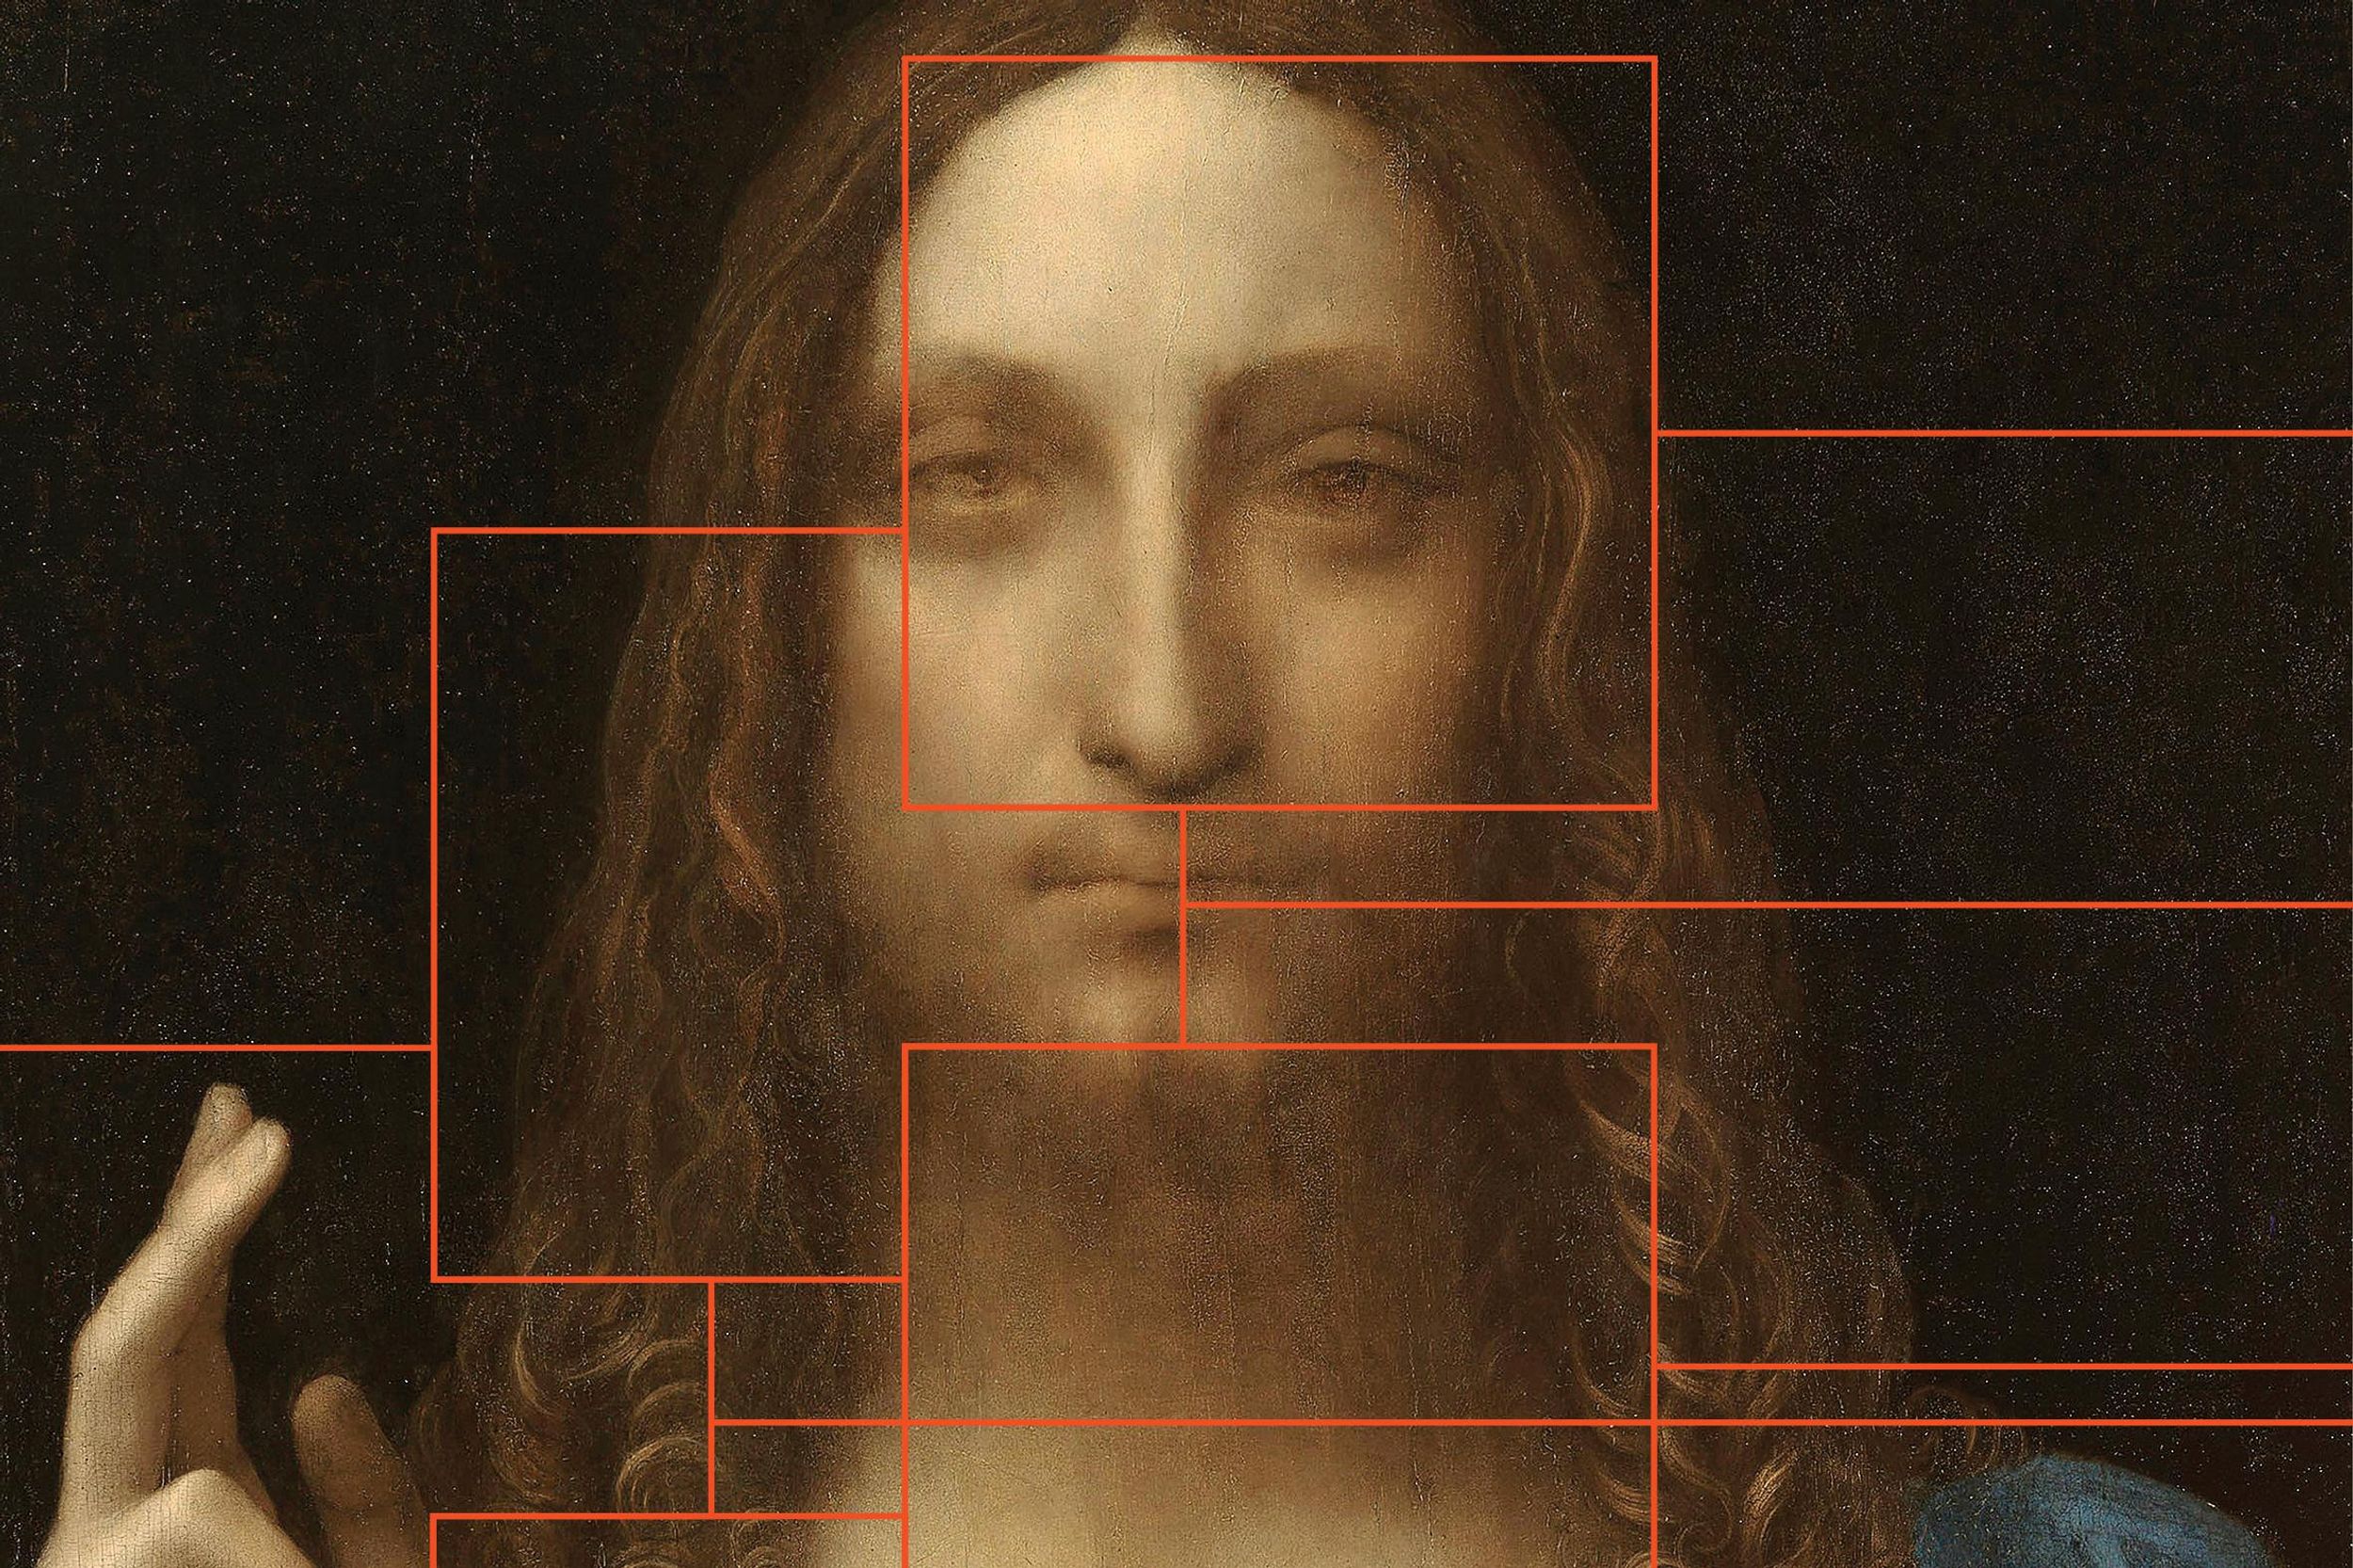 The image of Leonardo da Vinci's Salvator Mundi